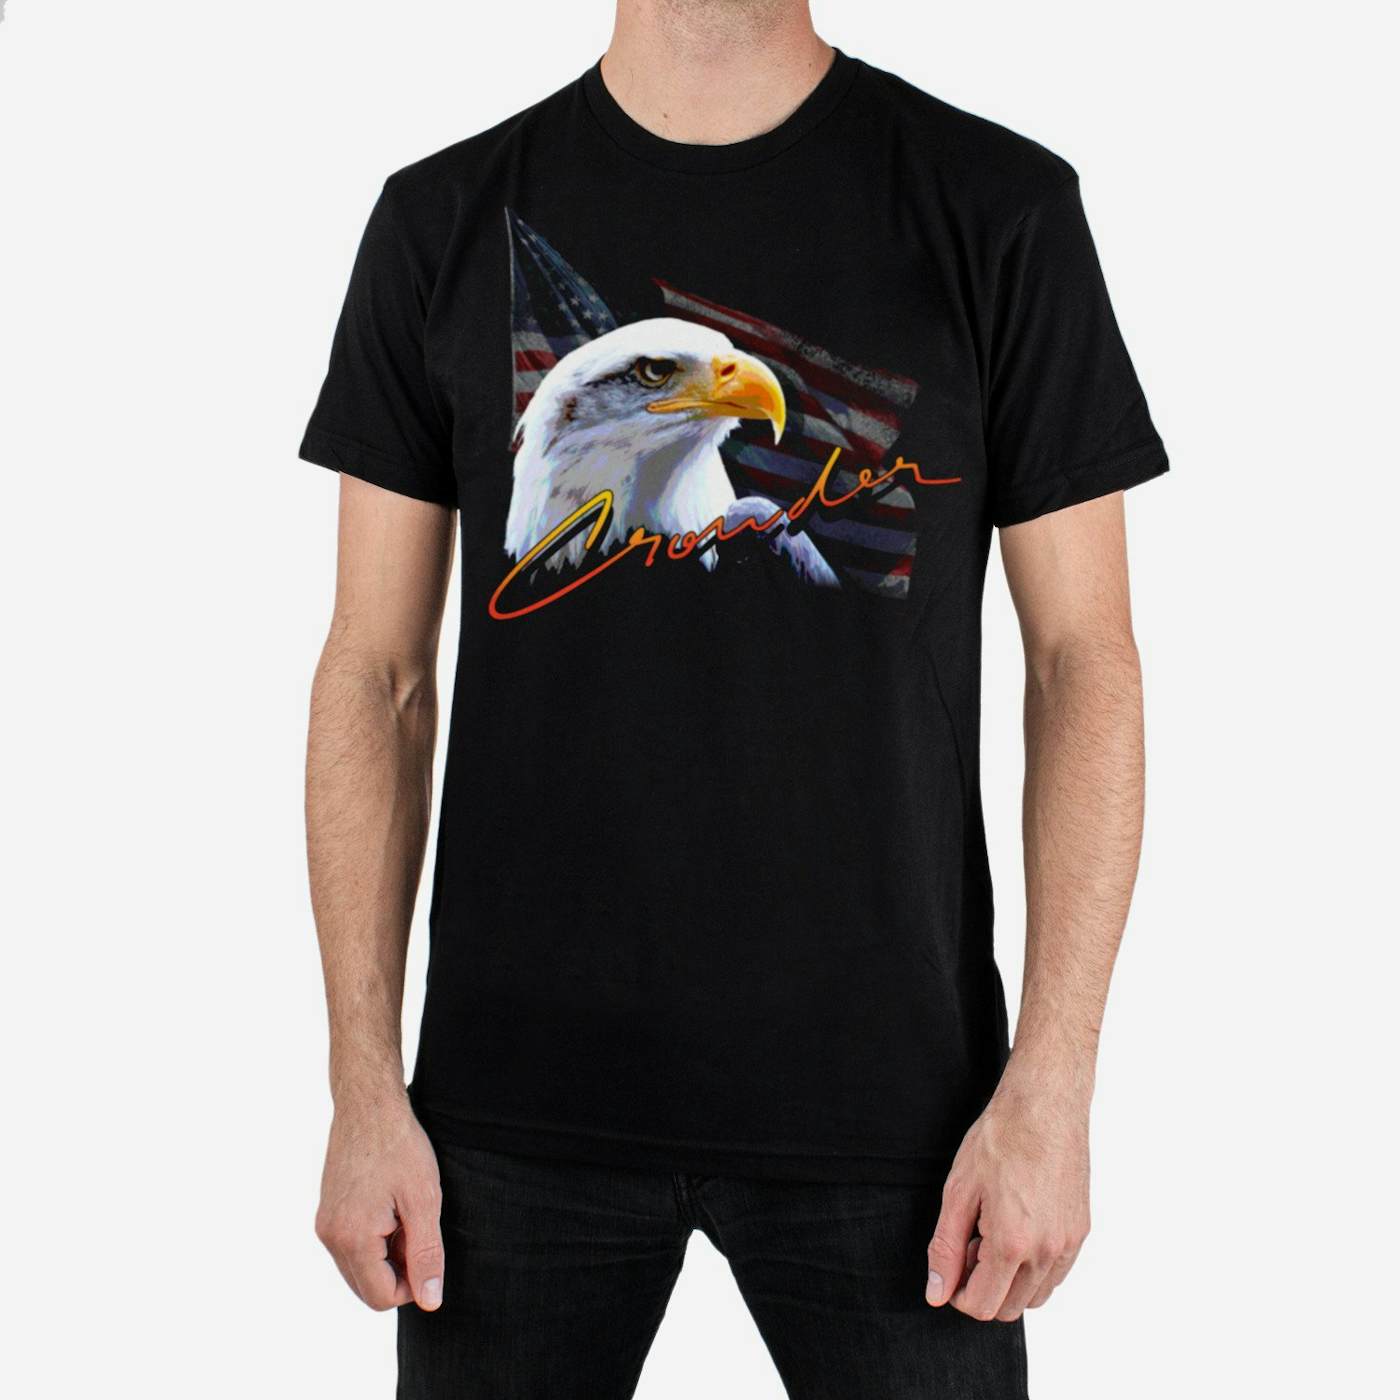 Crowder 'Eagle' T-Shirt